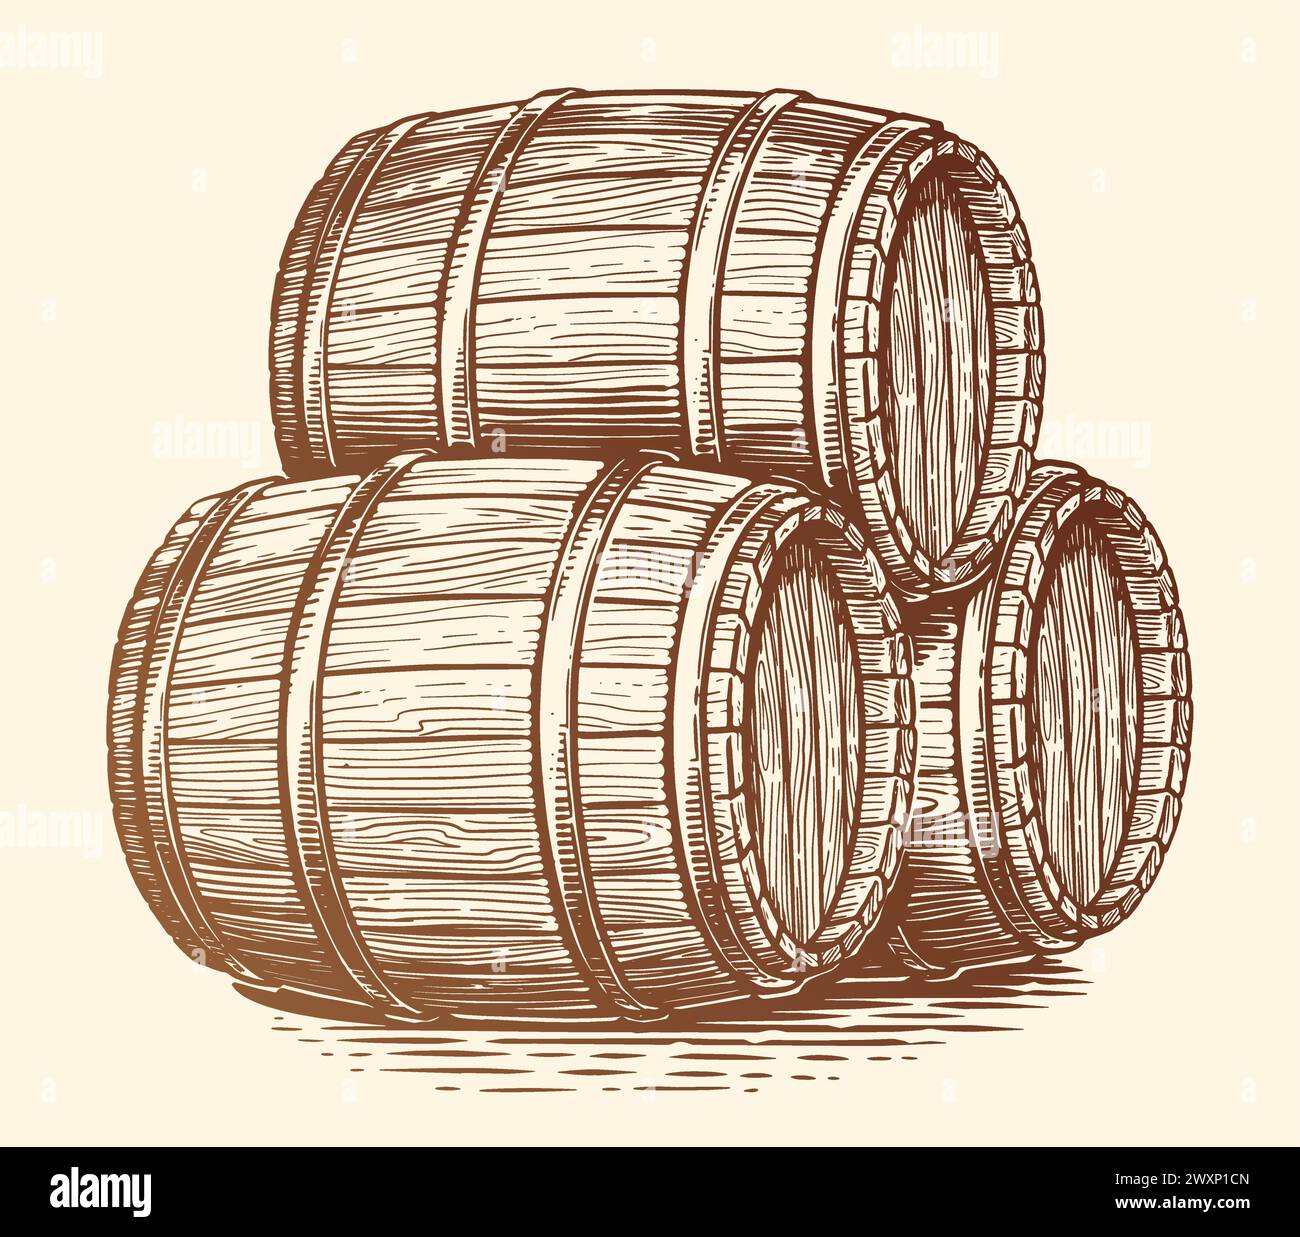 Tre botti di legno per bevande alcoliche. Fusti di quercia con vino o birra. Illustrazione con incisione disegnata a mano Illustrazione Vettoriale